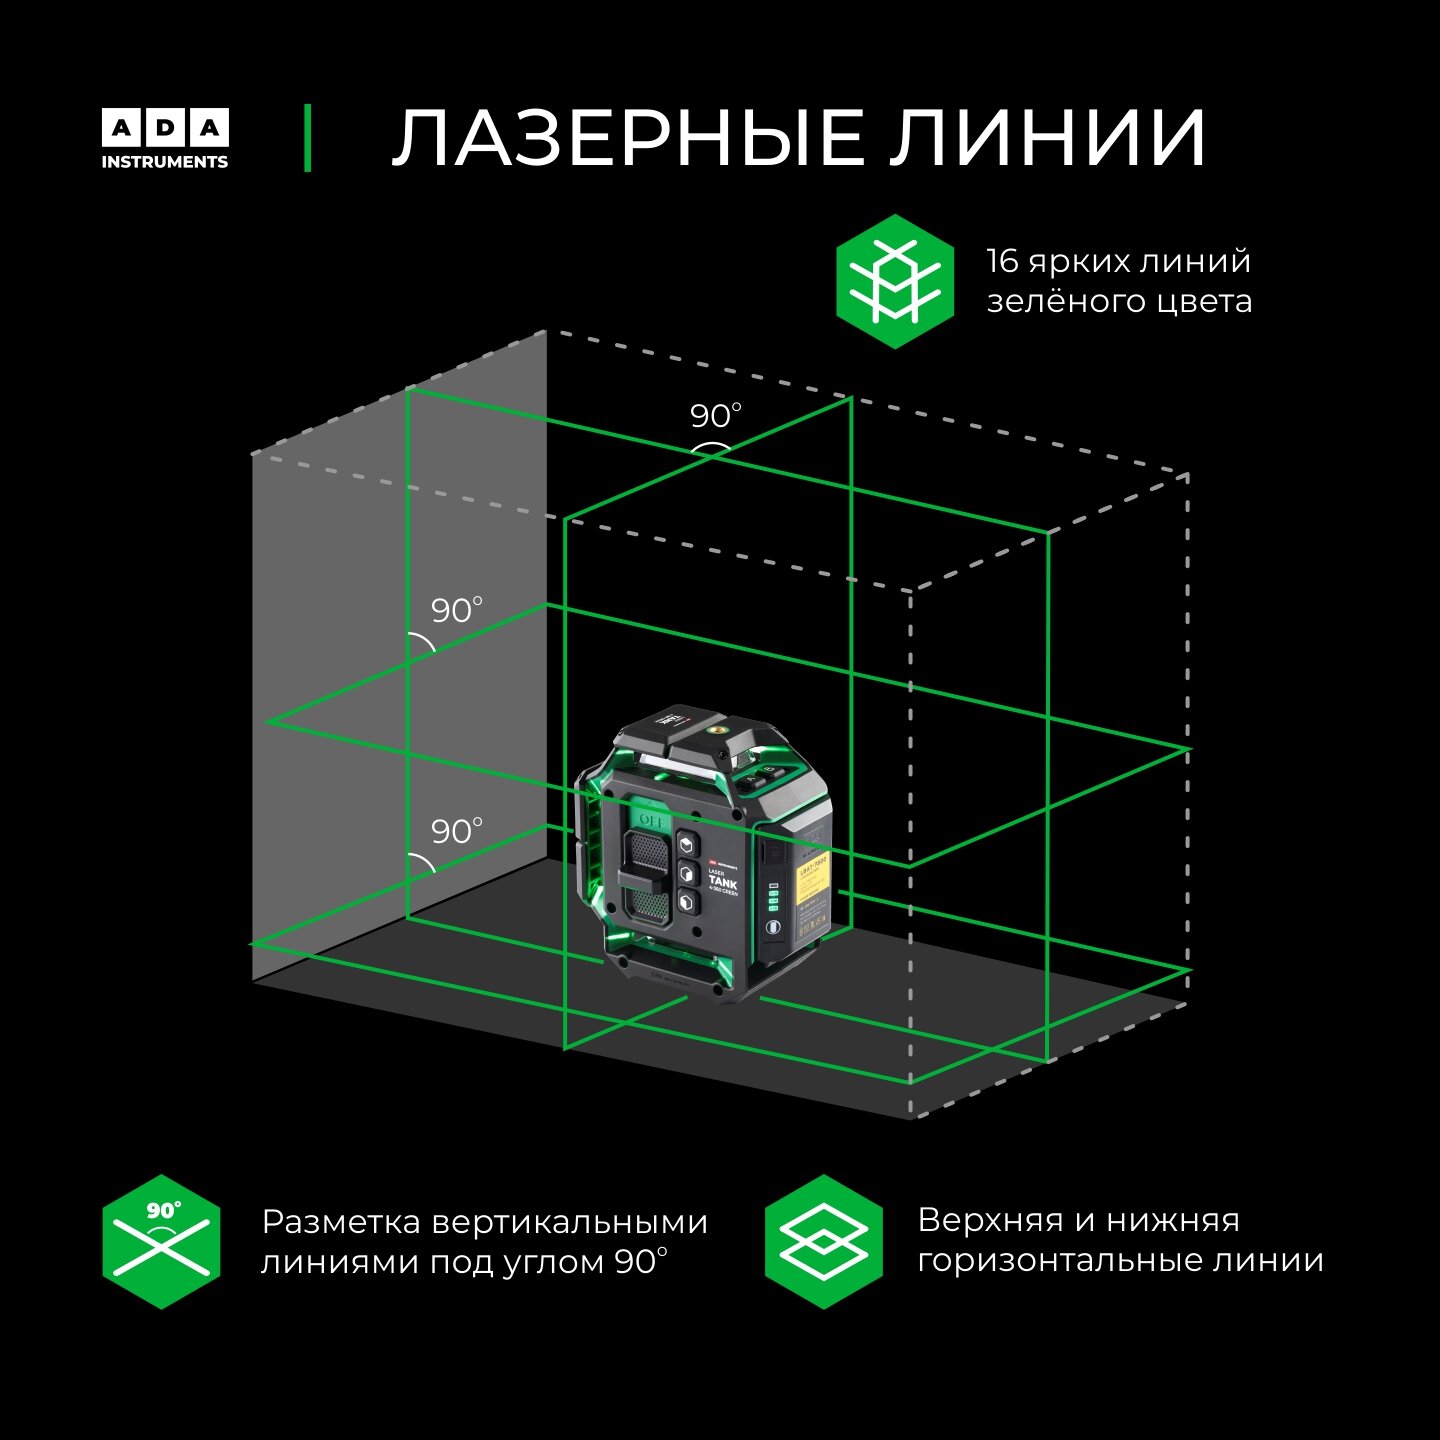 Лазерный уровень ADA LaserTANK 4-360 [А00631] купить в Красноярске